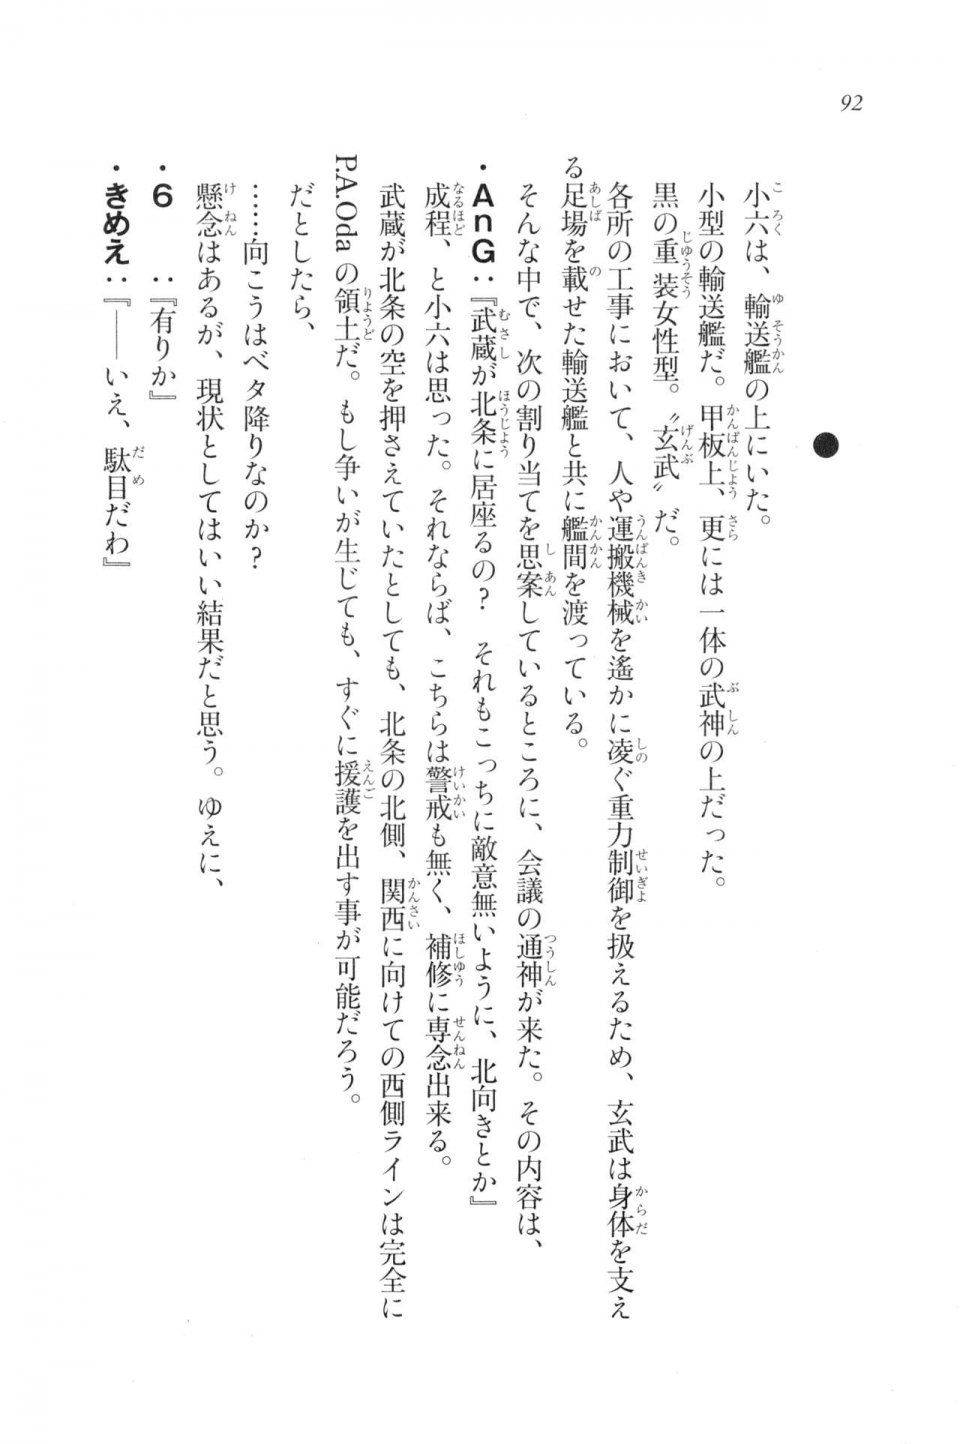 Kyoukai Senjou no Horizon LN Vol 20(8B) - Photo #92